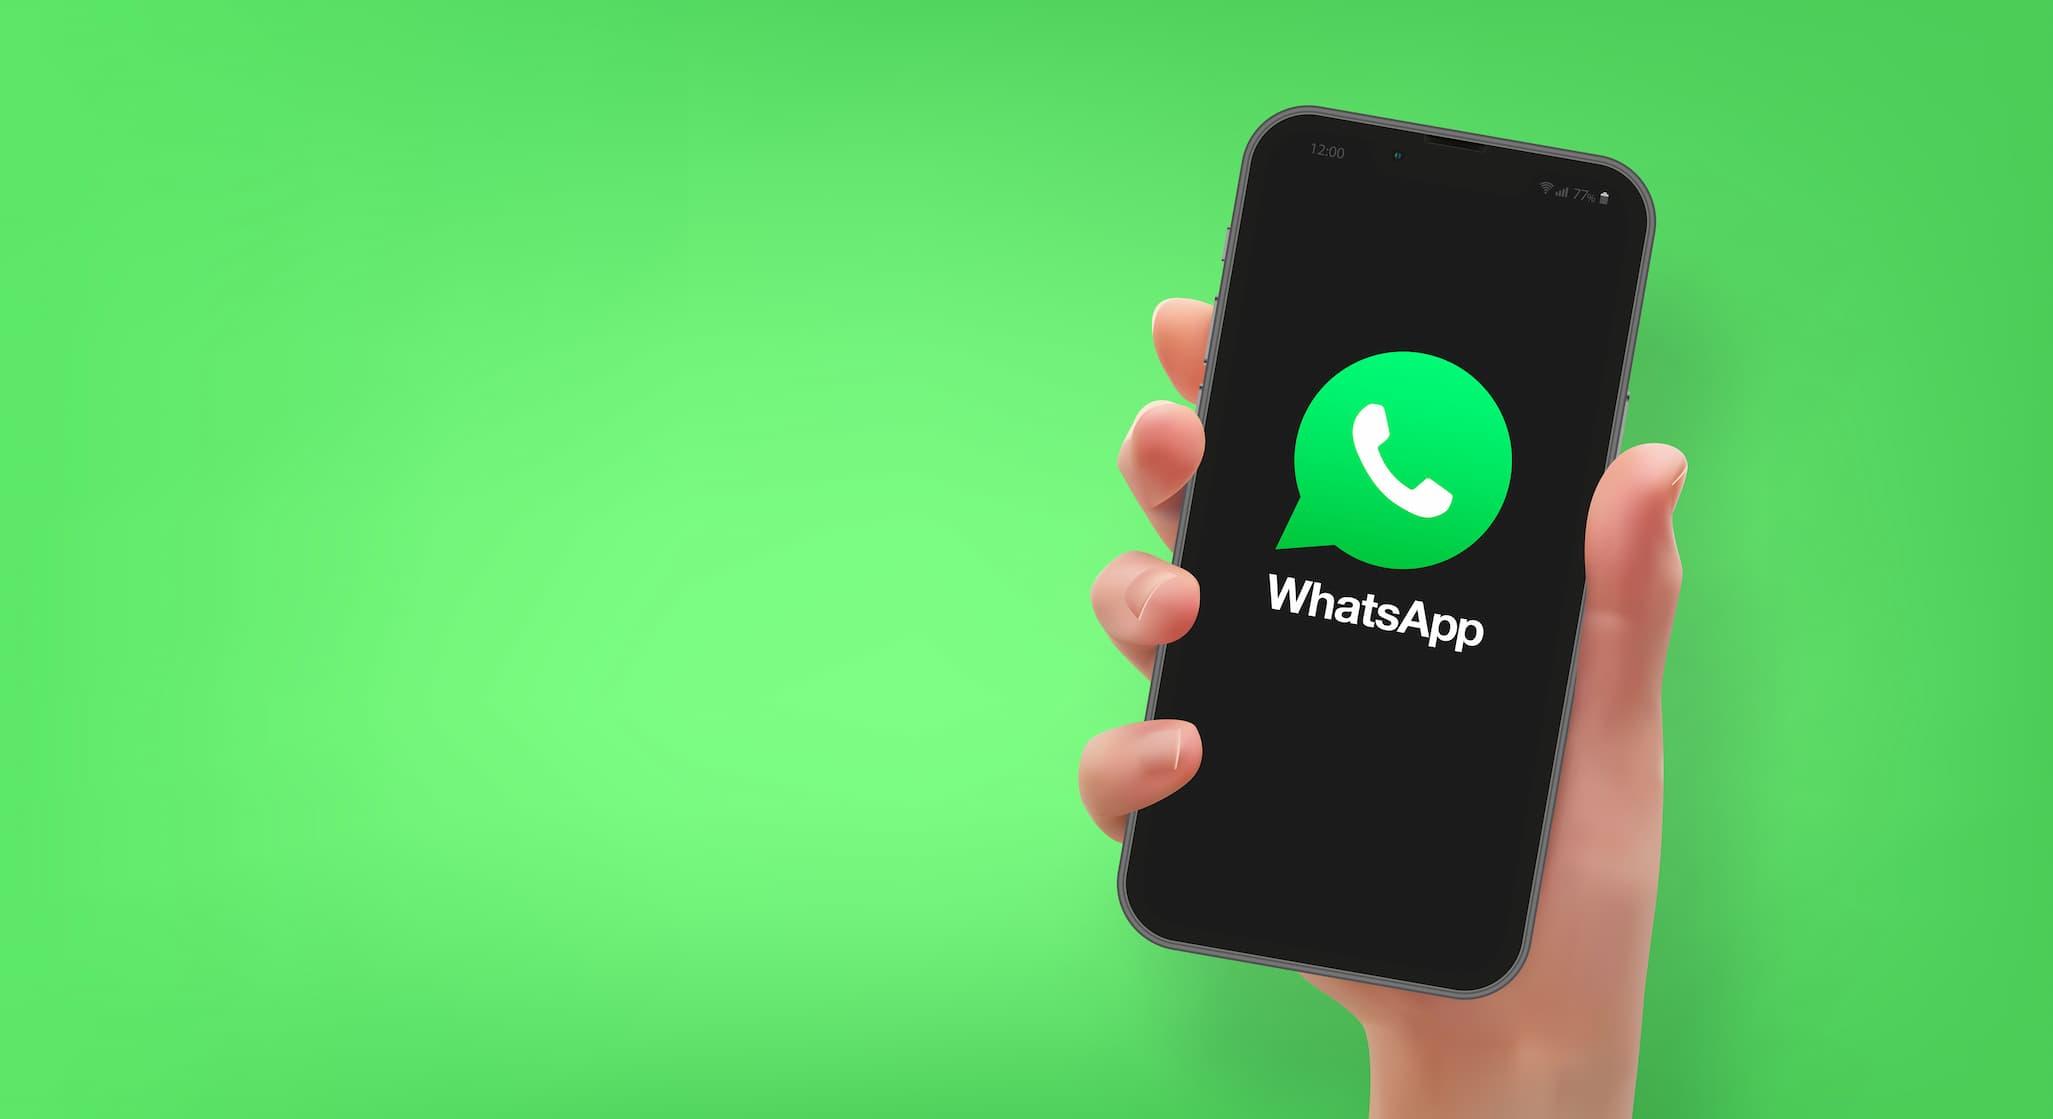 Sebrae Minas - WhatsApp como ferramenta de relacionamento e negócio